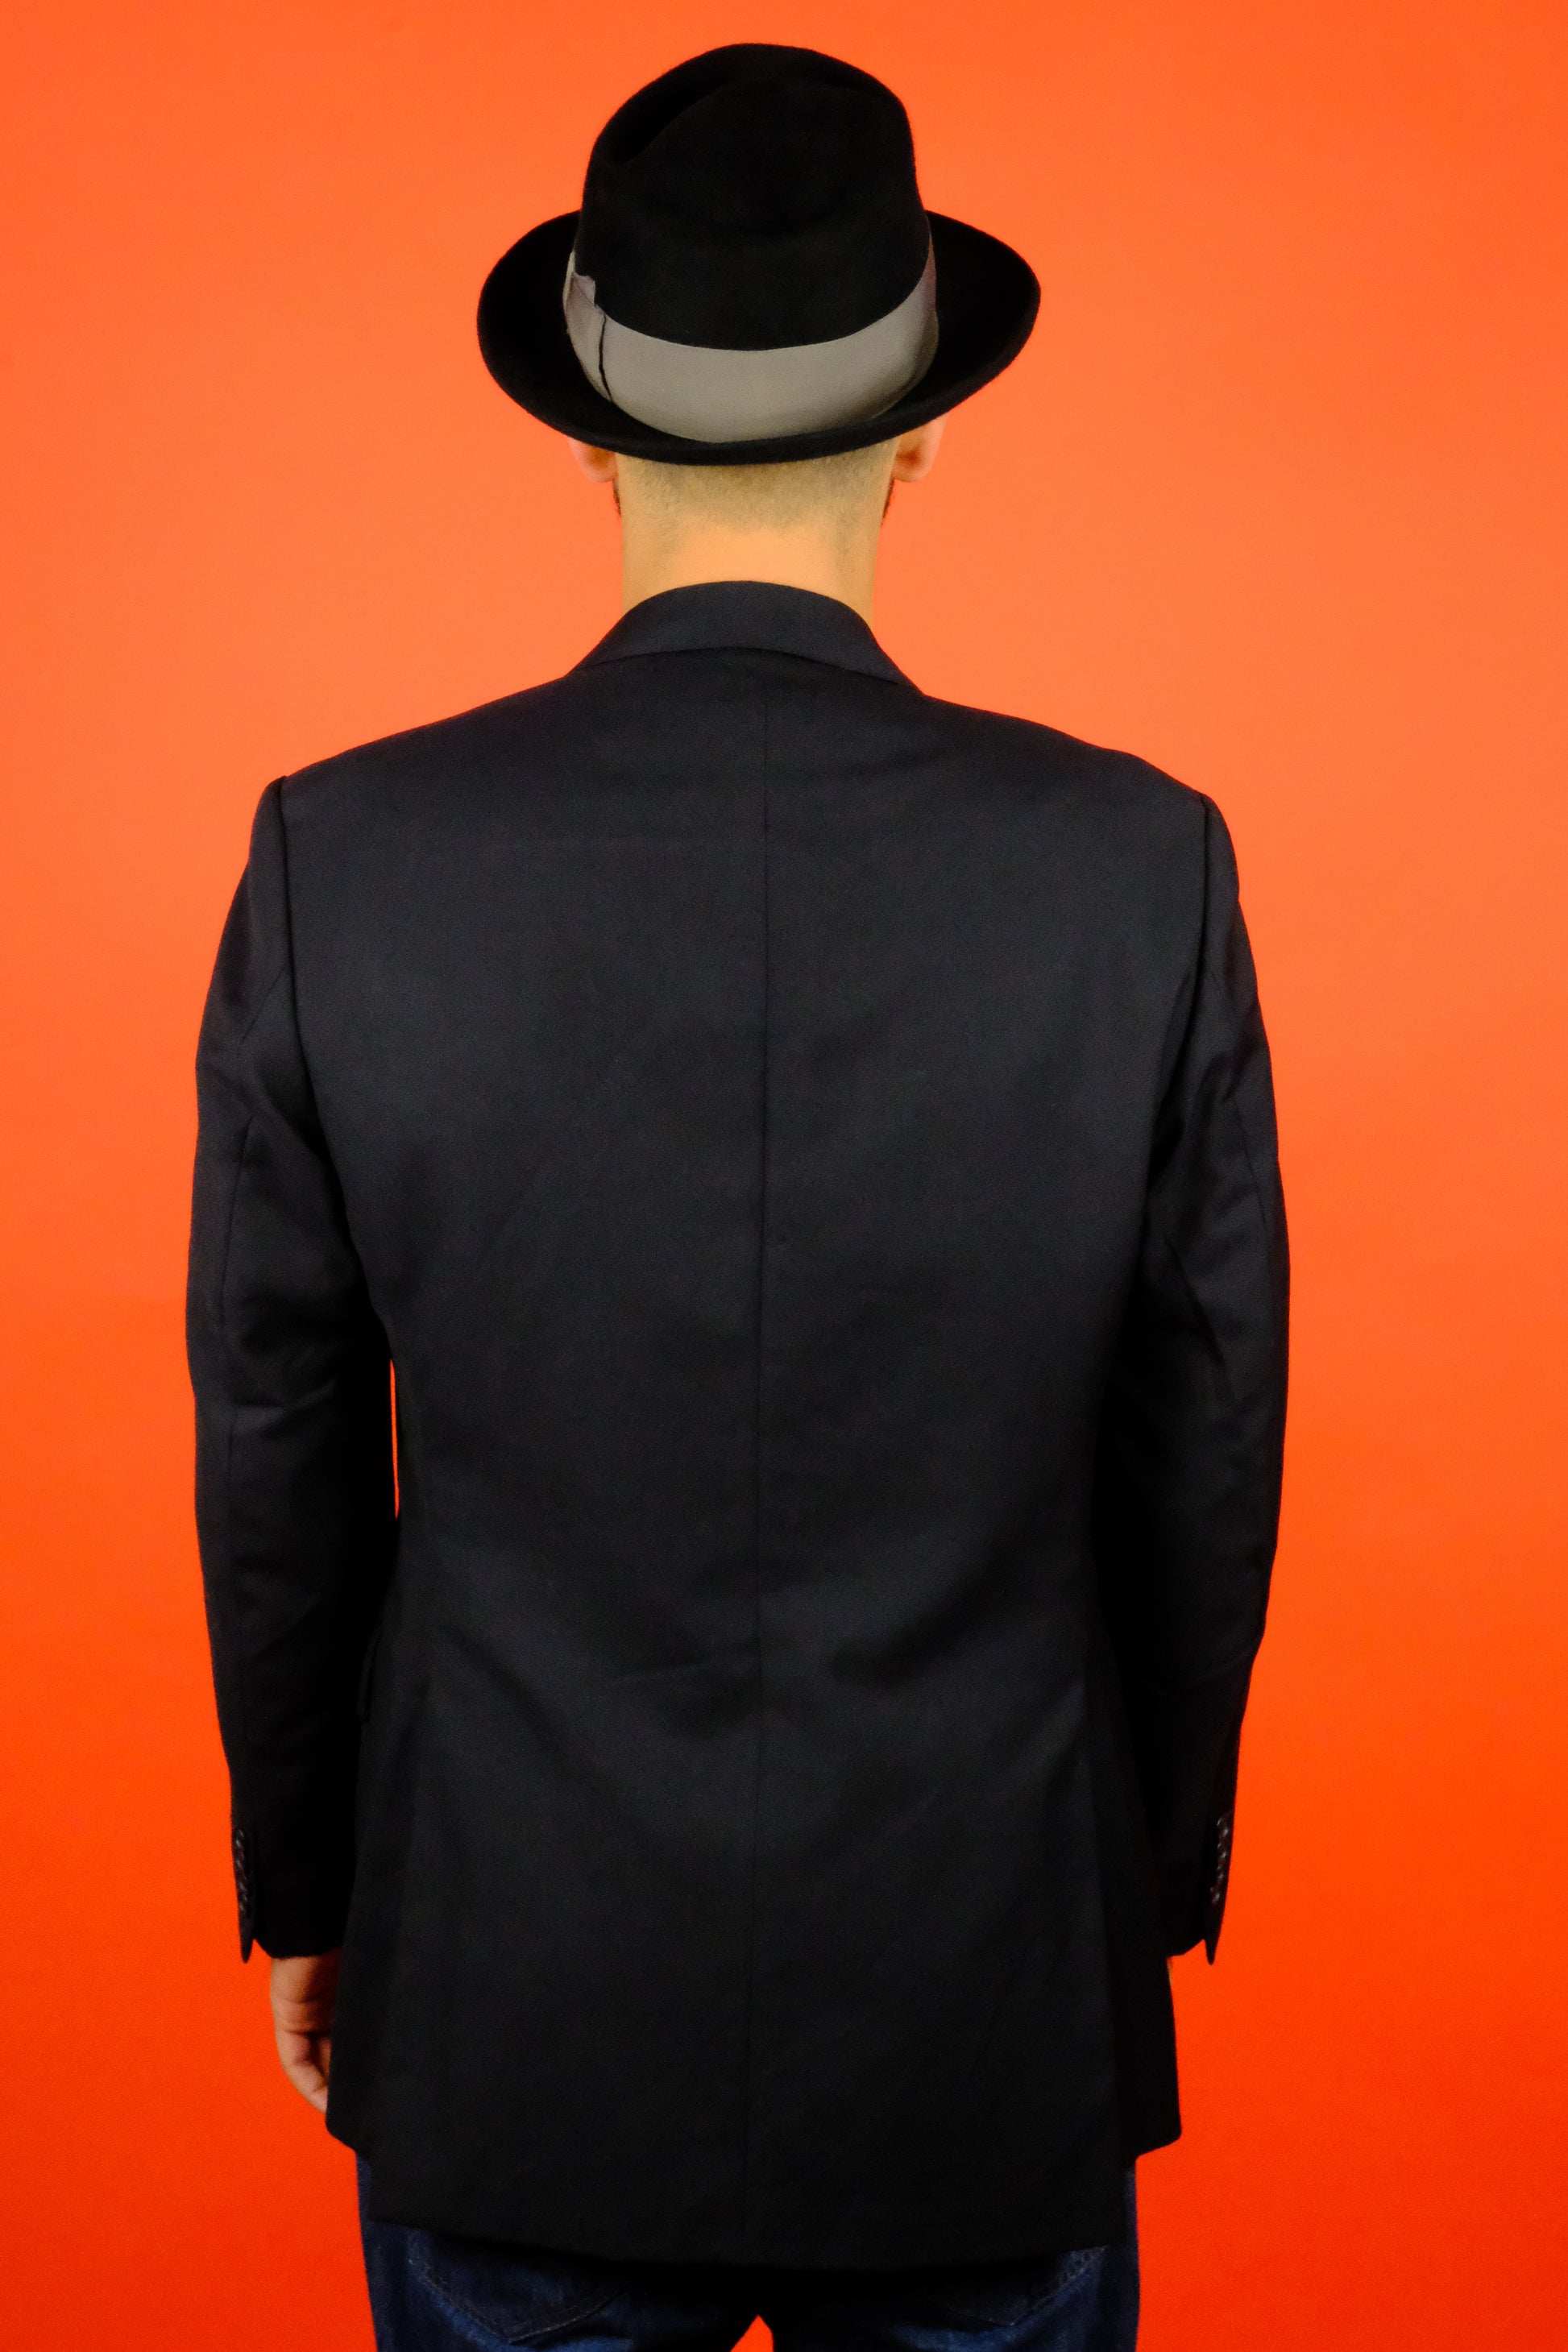 Burberry Wool & Cashmere Suit Jacket 'M' - vintage clothing clochard92.com